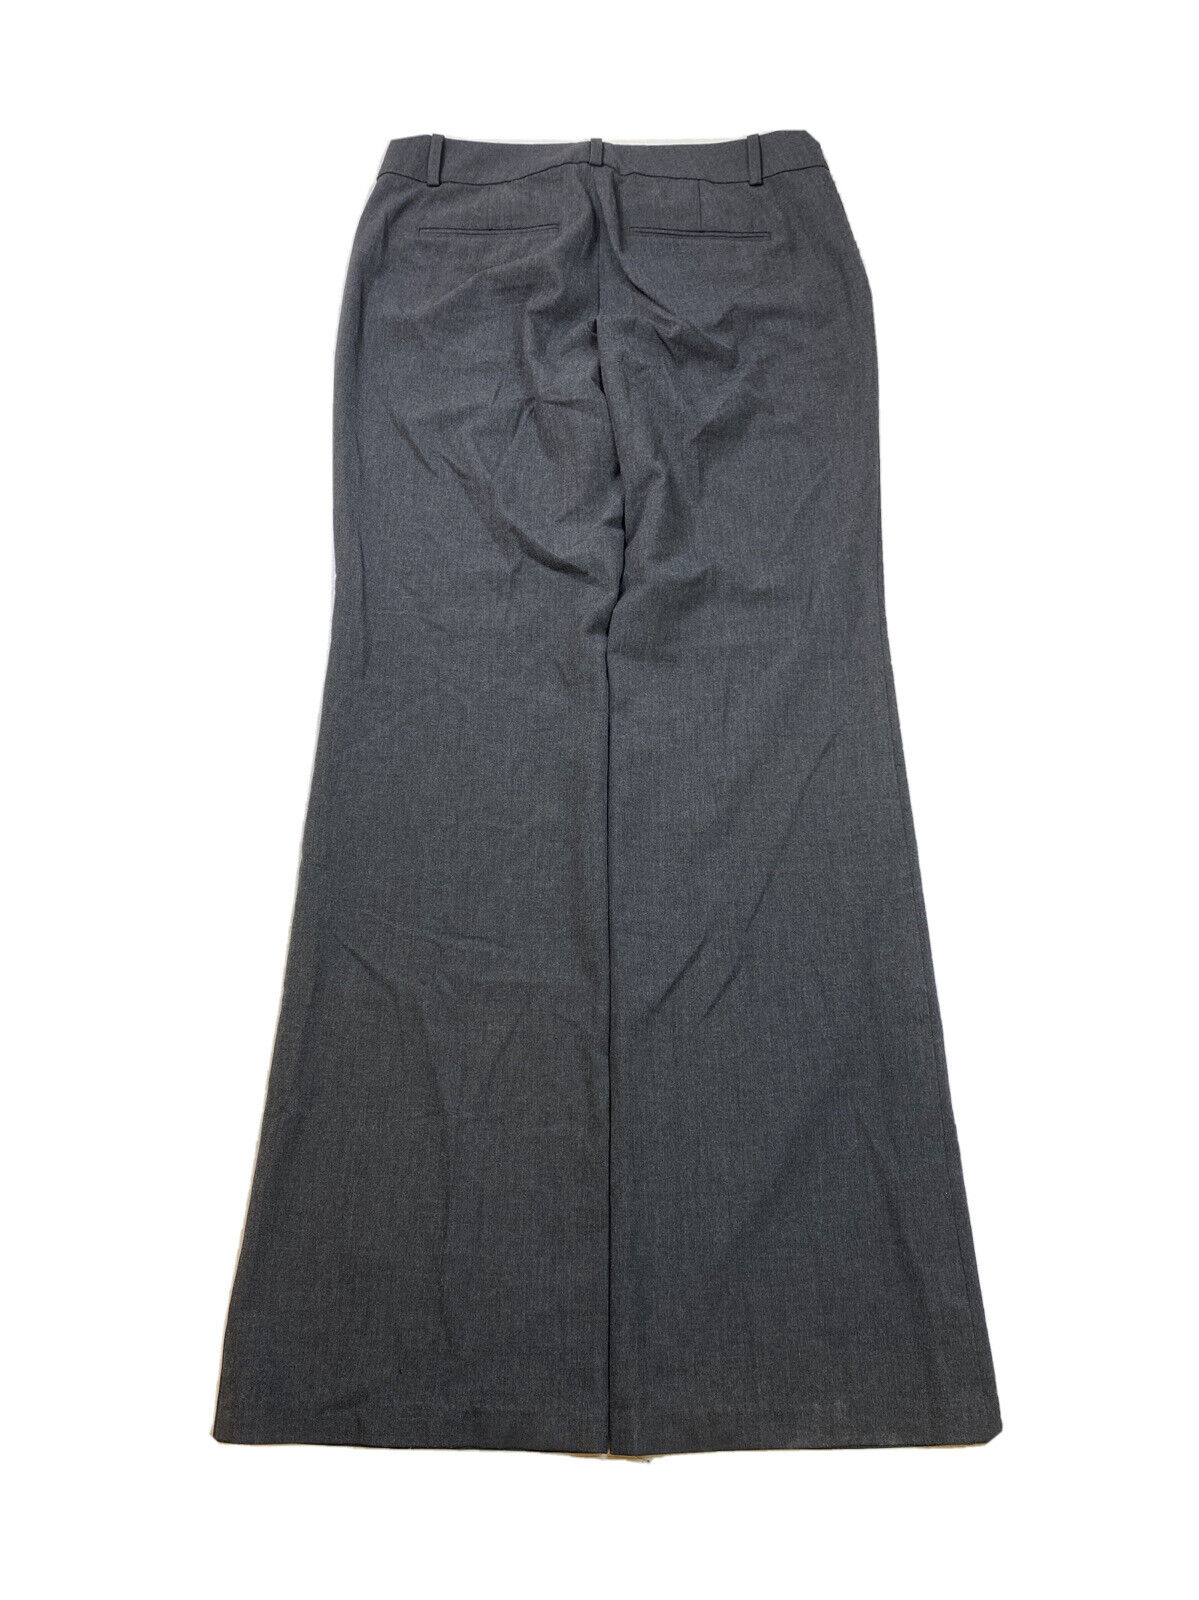 Ann Taylor Women's Gray Charcoal Slim Straight Leg Dress Pants - 6